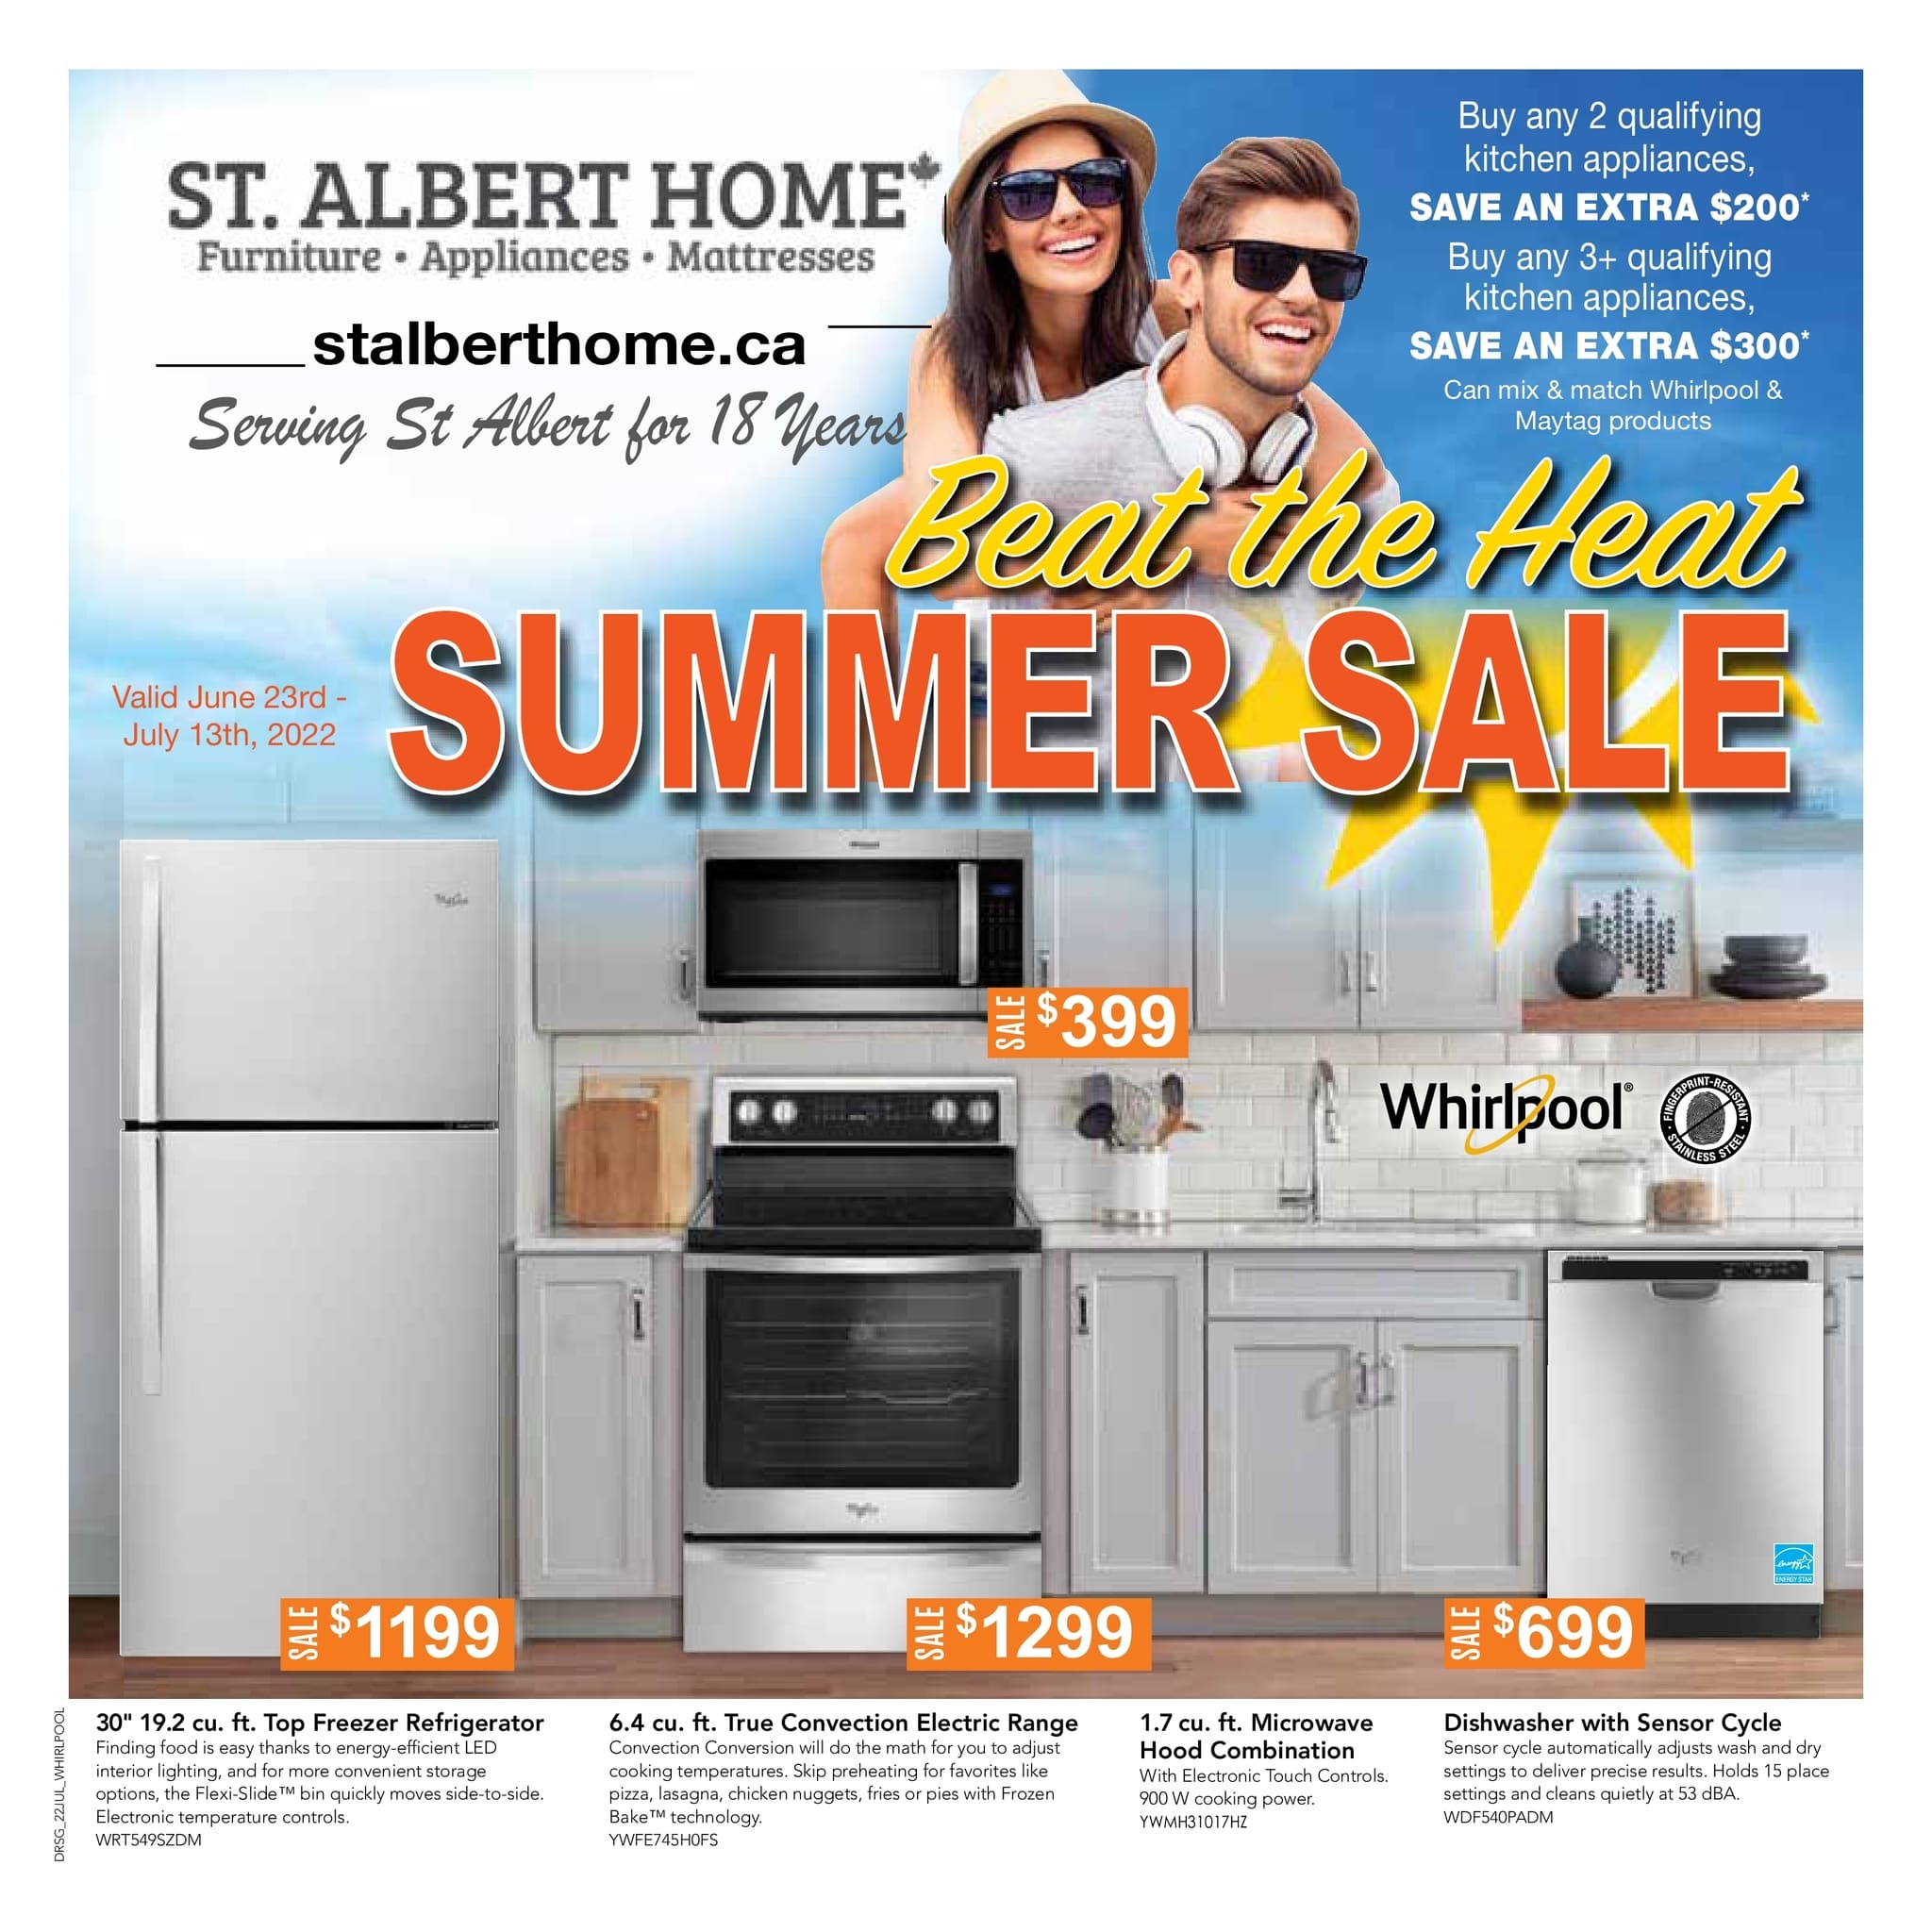 St. Albert Home - Summer Sale